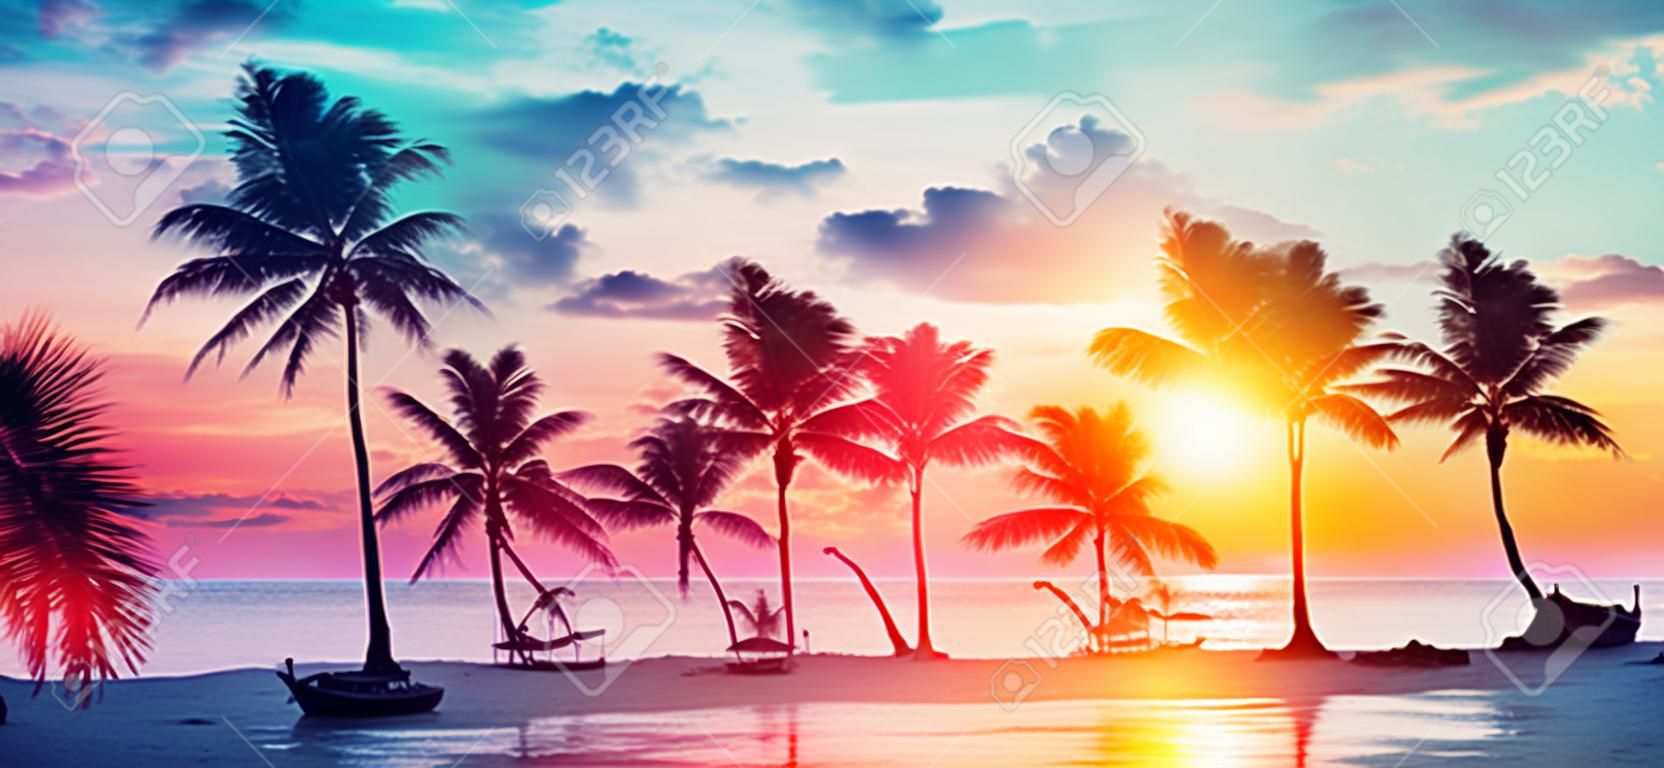 Palmen-Silhouetten am tropischen Strand bei Sonnenuntergang - moderne Vintage-Farben